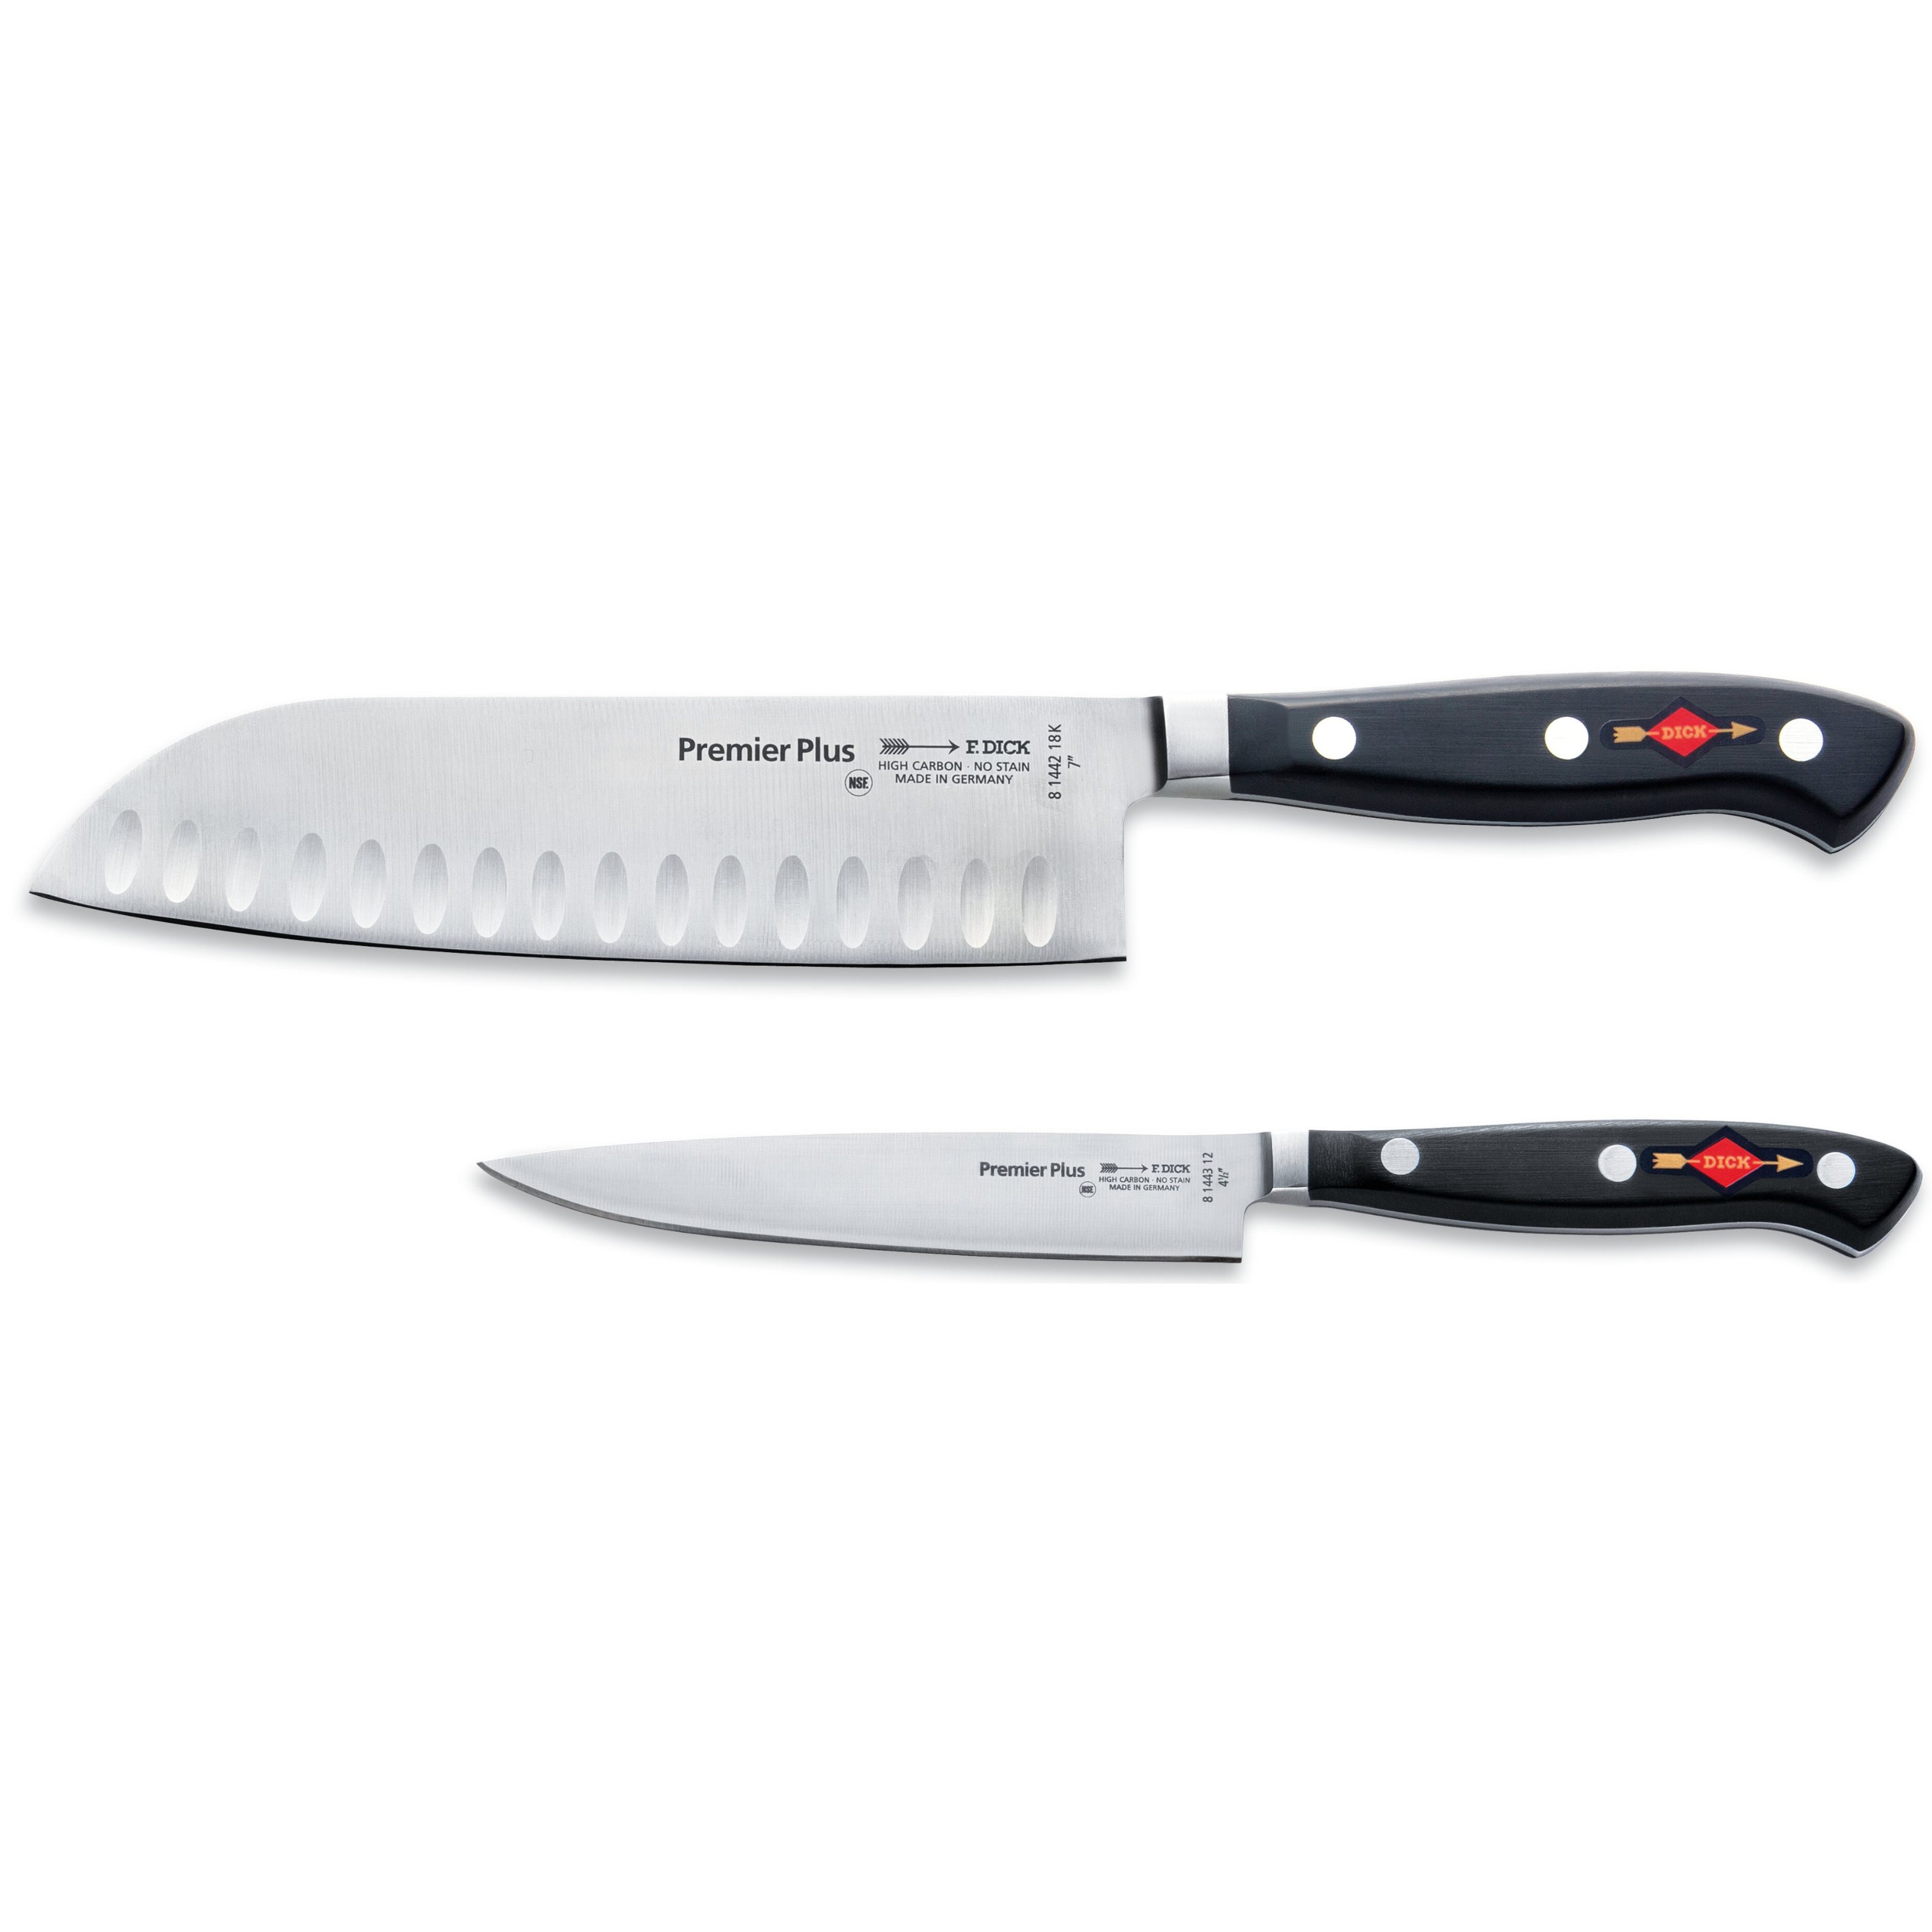 Kuchyňské nože PREMIER PLUS, sada 2 ks, nerezová ocel, F.DICK